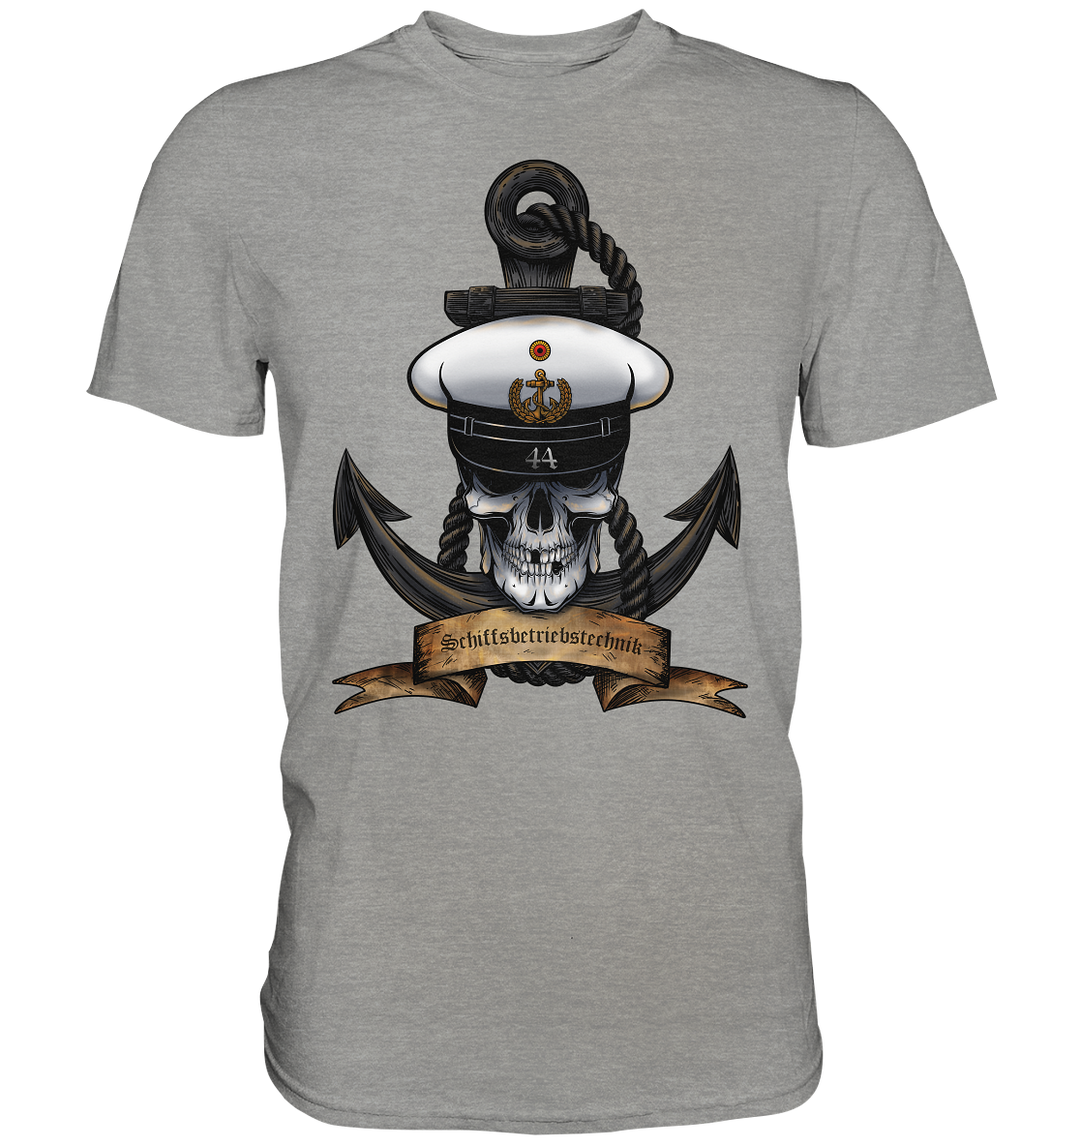 "Marine 44 - Schiffsbetriebstechnik" - Premium Shirt